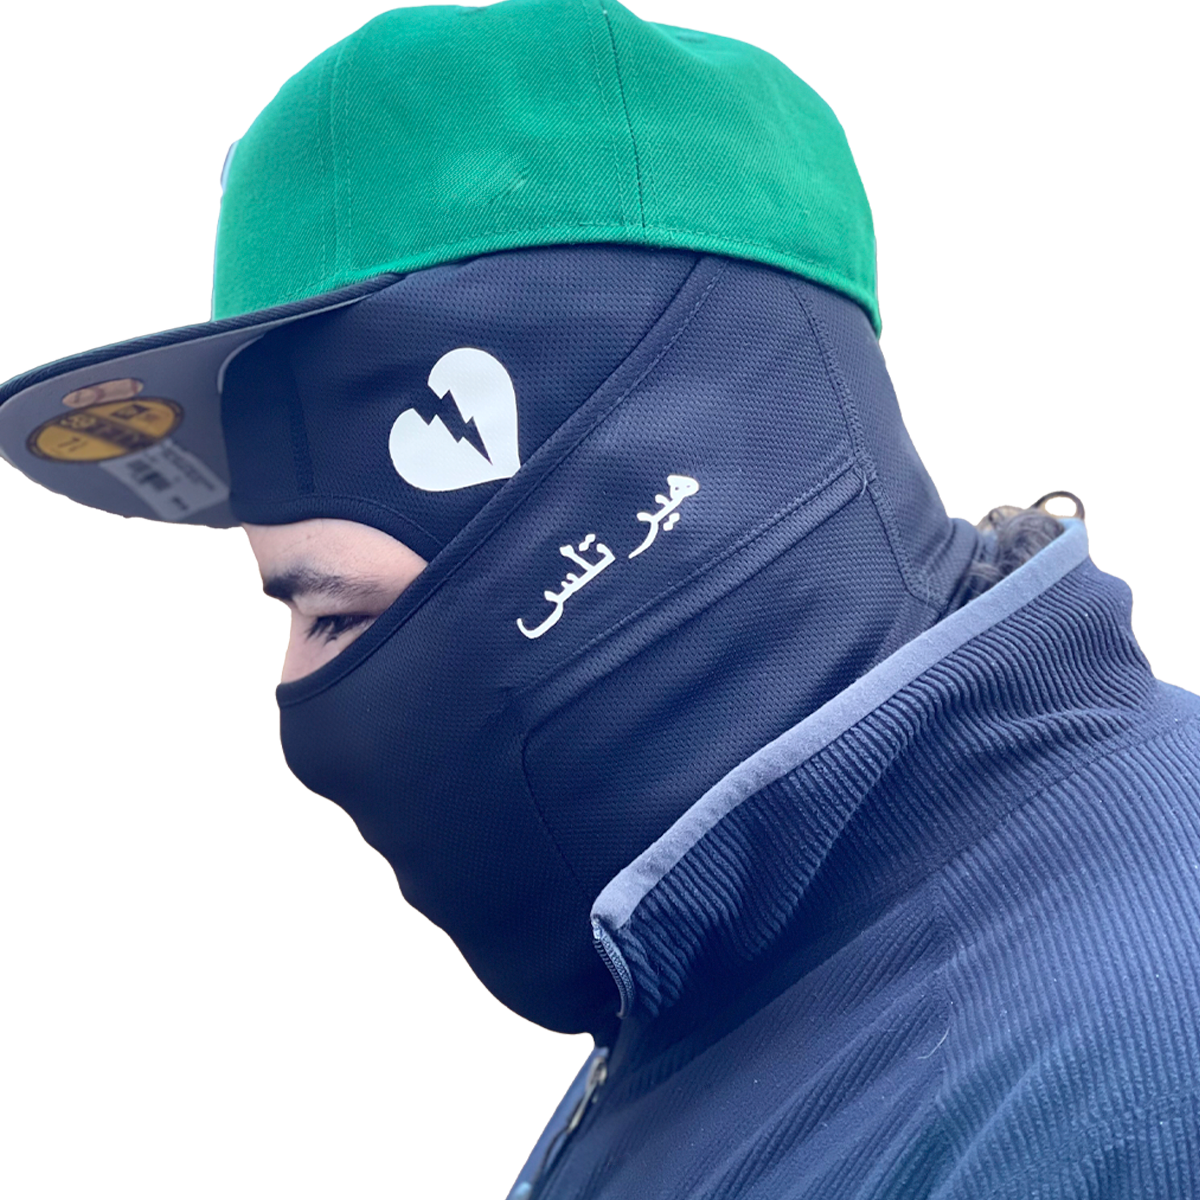 Arabic "Hearless" Lightweight Balaclava Ski mask - GCBalaclavas